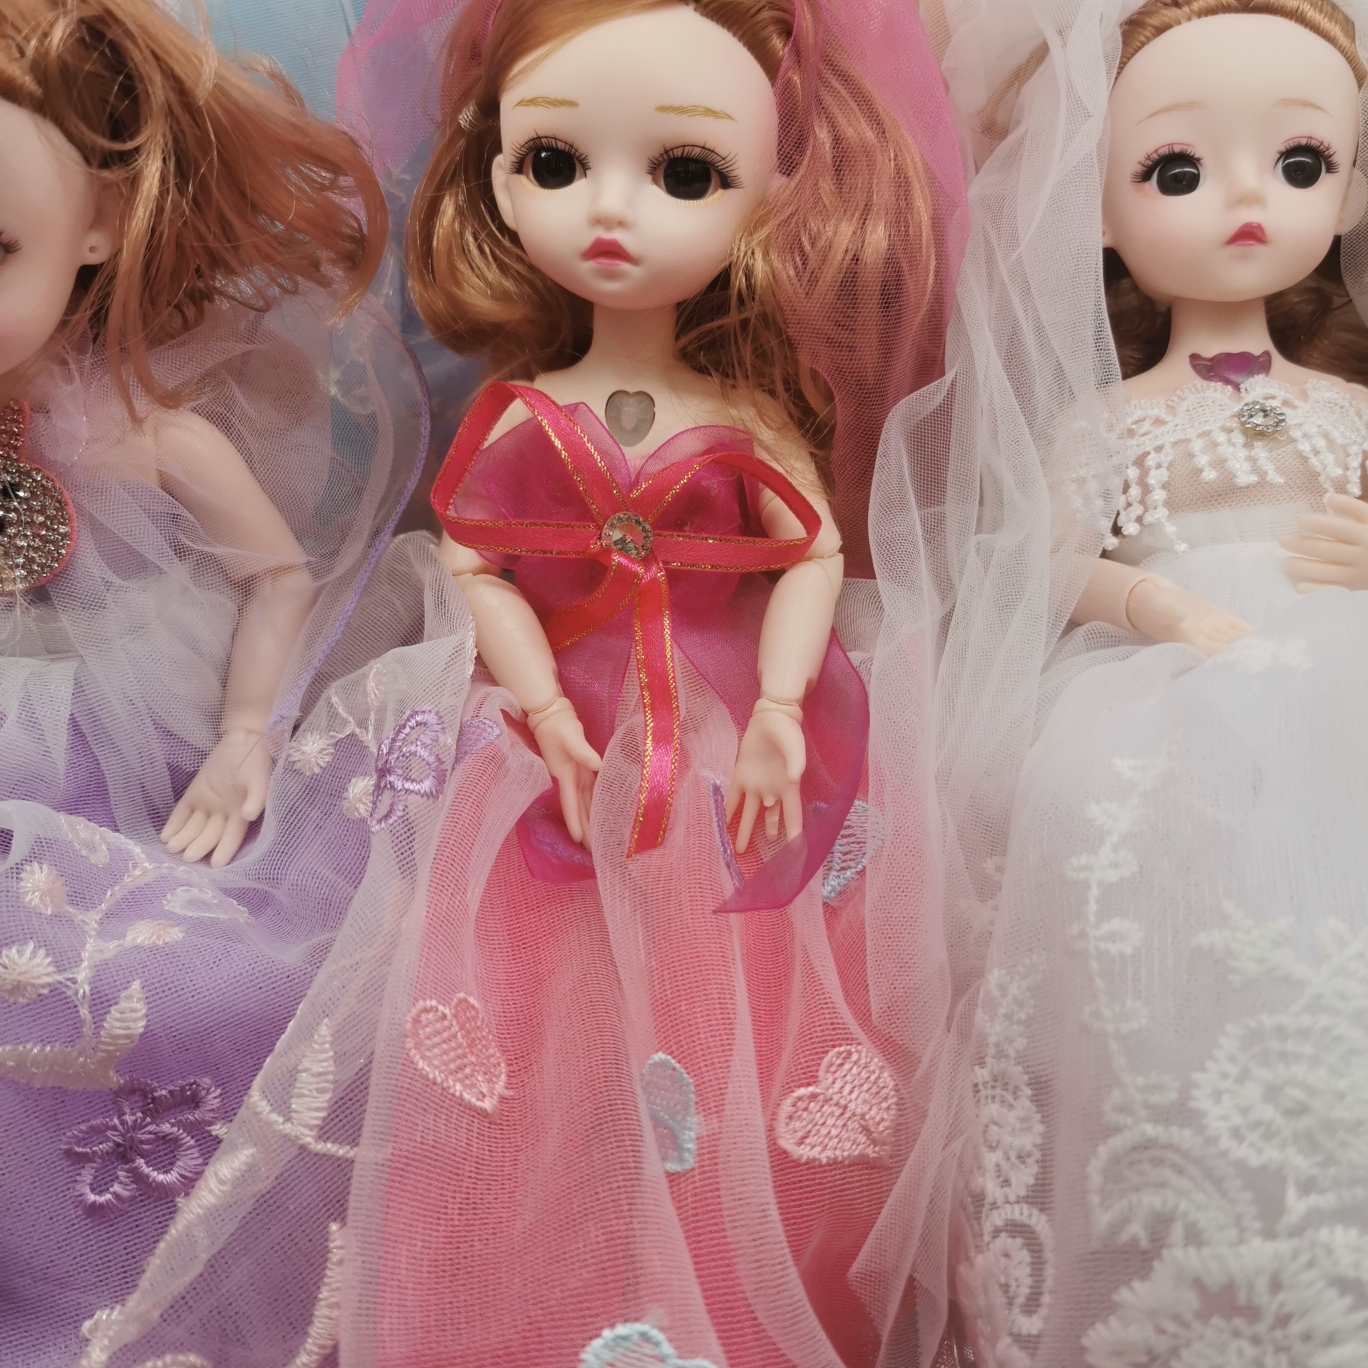  新款女孩过家家萝莉公主巴比洋娃娃礼盒套装会唱歌手可弯曲娃娃玩具厂家货源批发摆地摊搪胶娃娃1